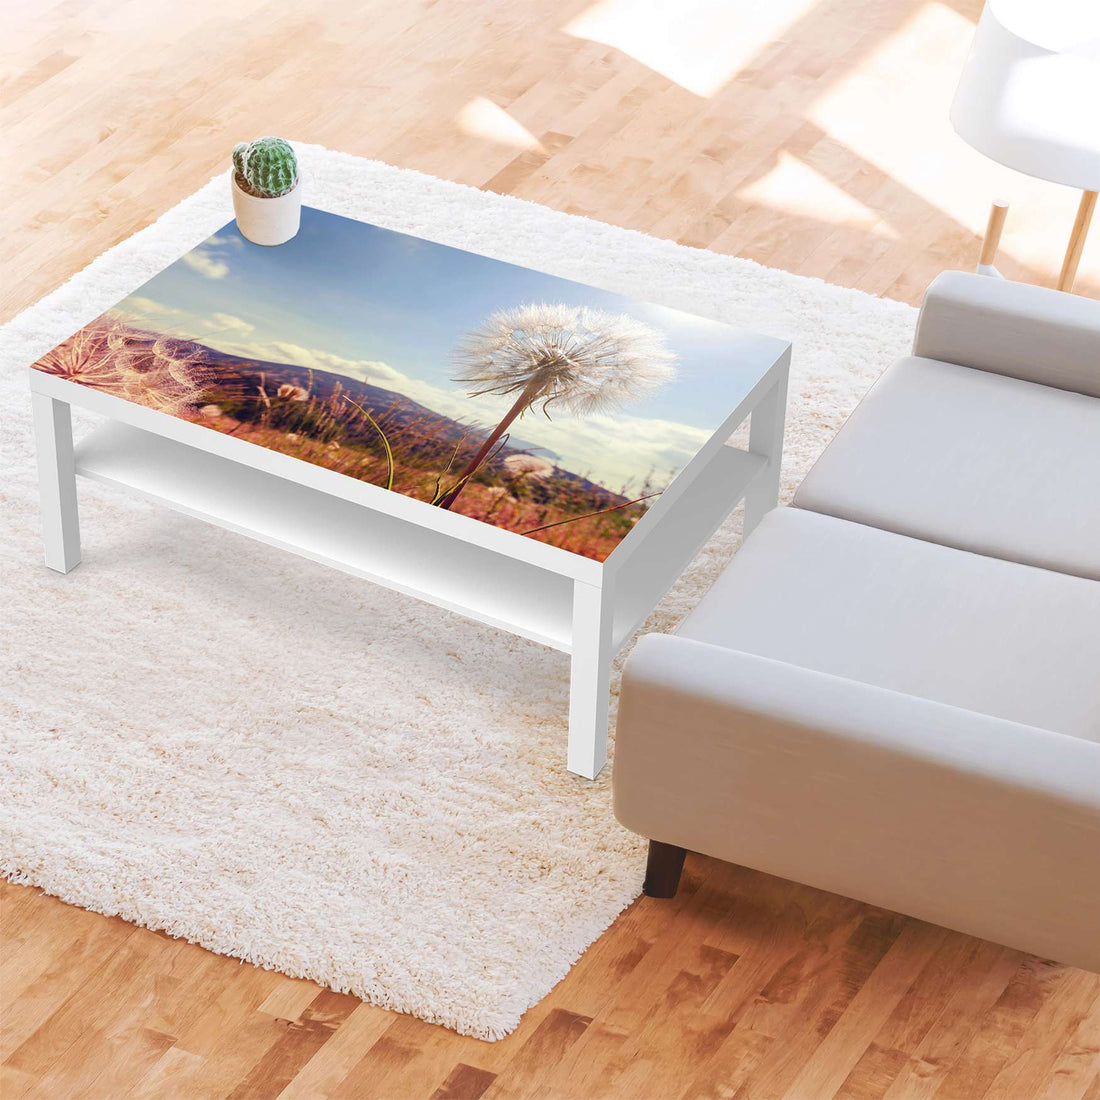 Klebefolie Dandelion - IKEA Lack Tisch 118x78 cm - Wohnzimmer